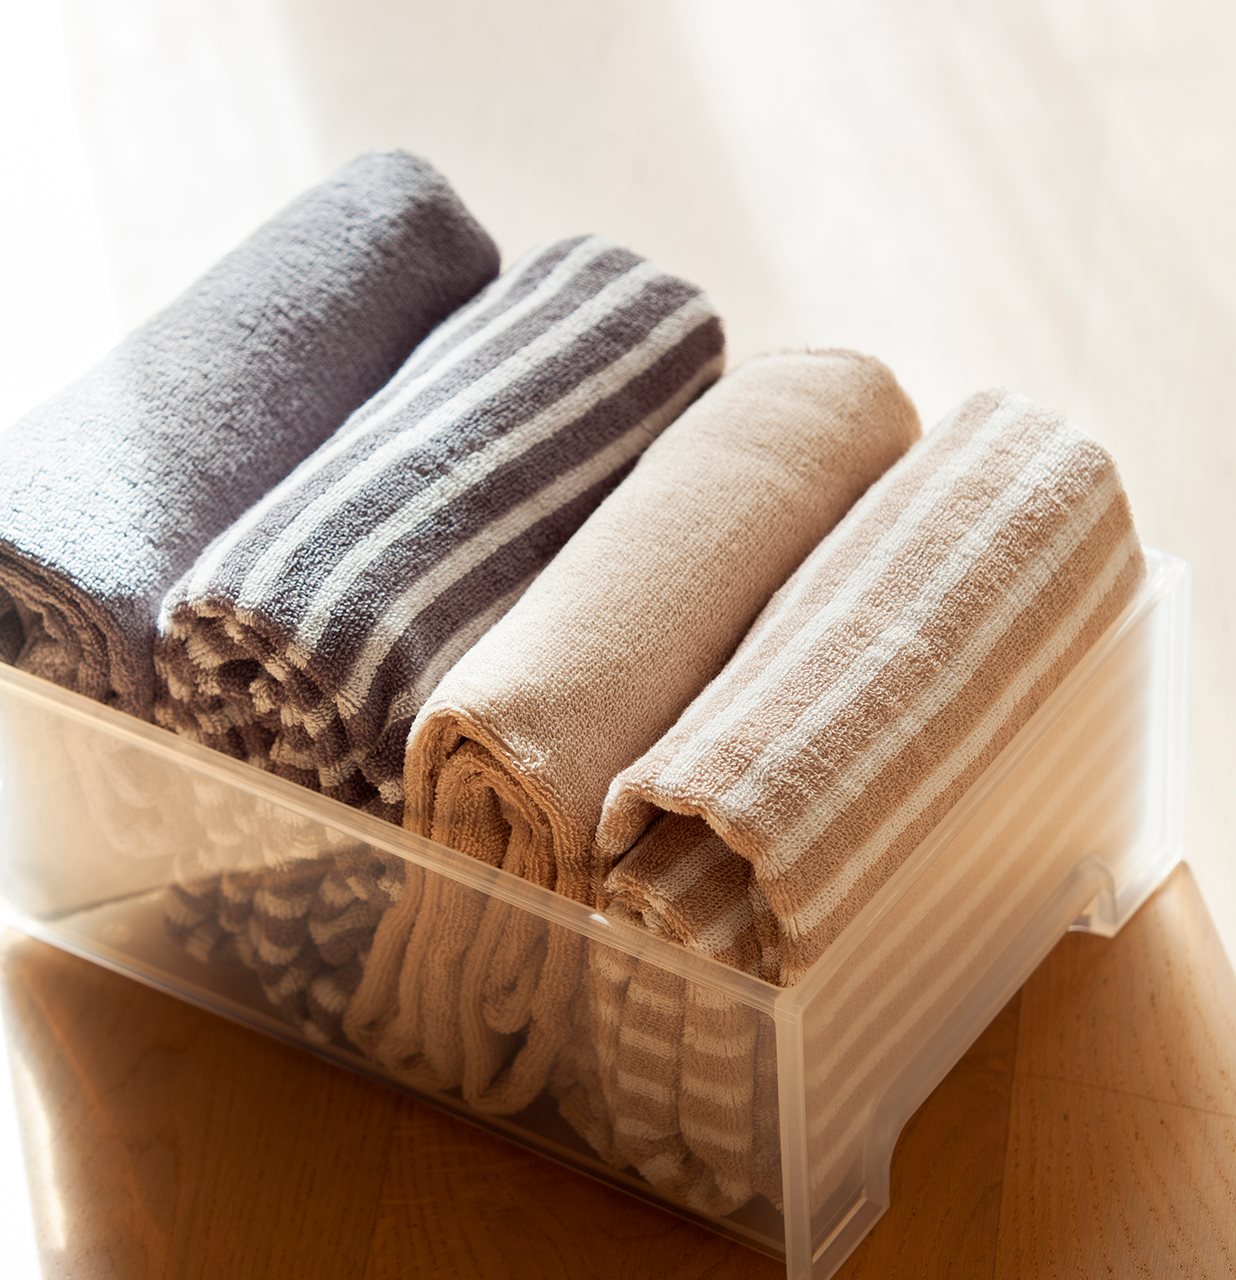 Detalle de toallas dobladas según el método de Marie Kondo. Toallas en beige y gris con diferentes estampados guardadas en una caja